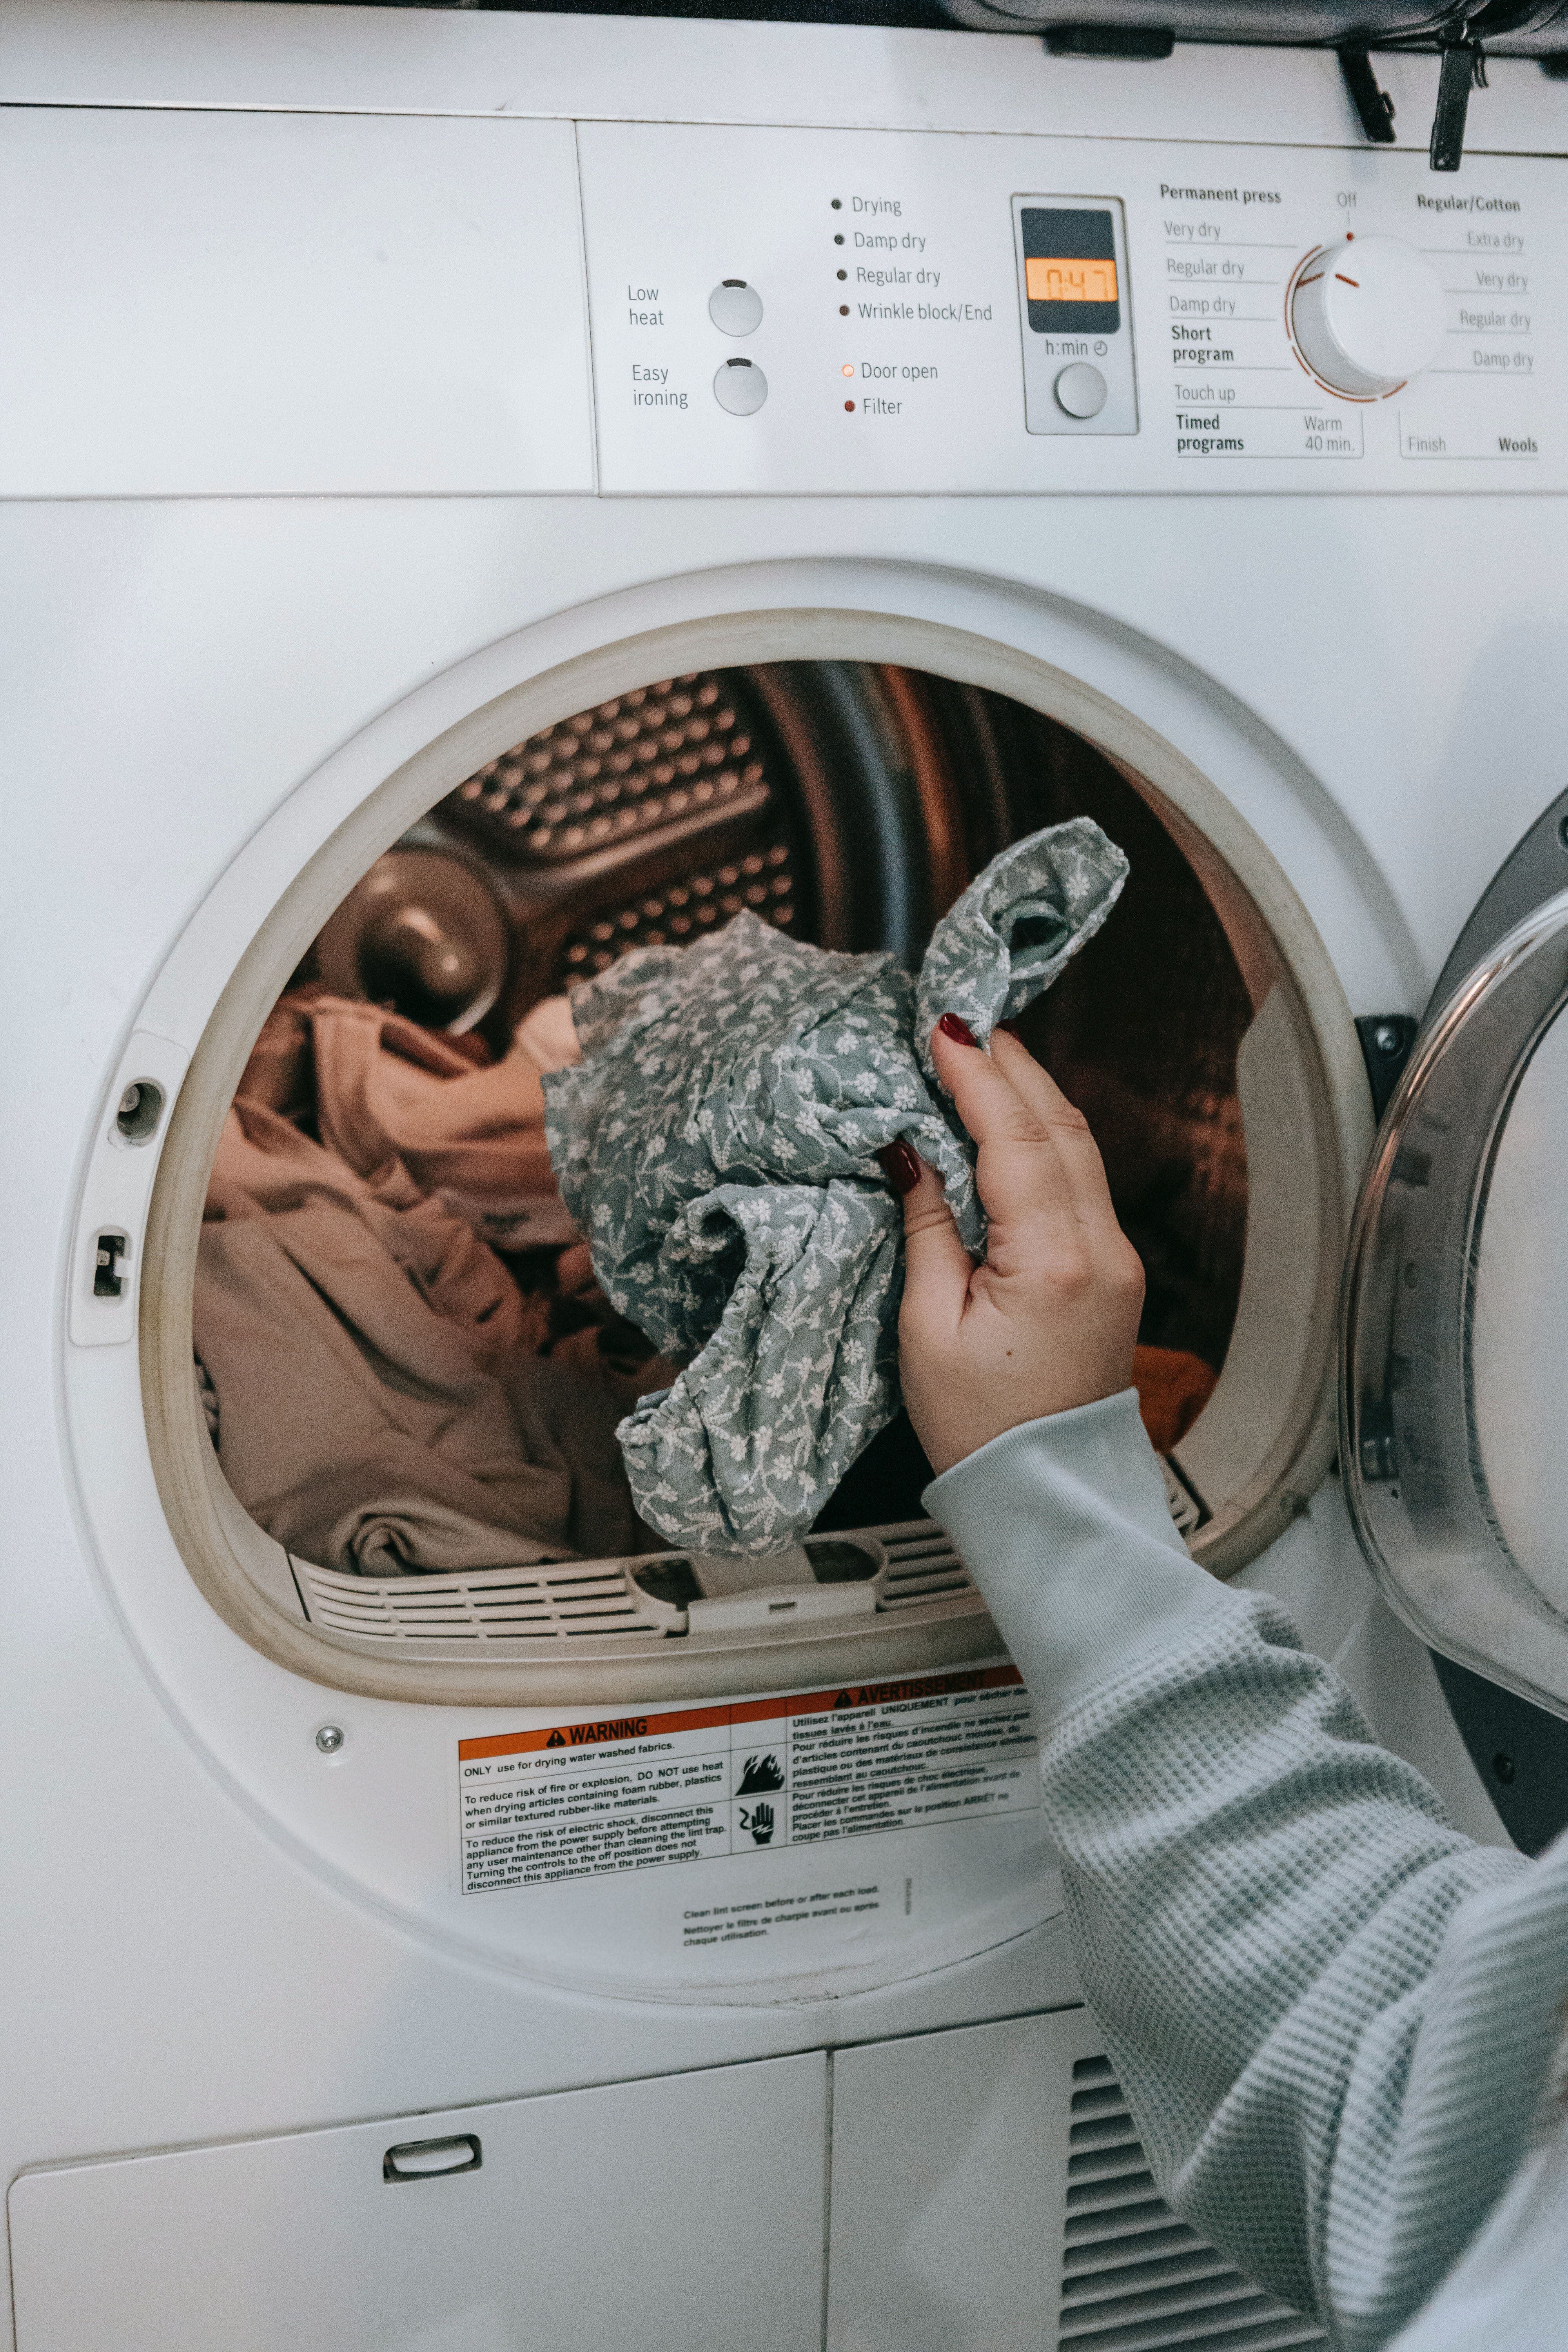 No más accidentes en la lavadora!: Mantén tus prendas protegidas e